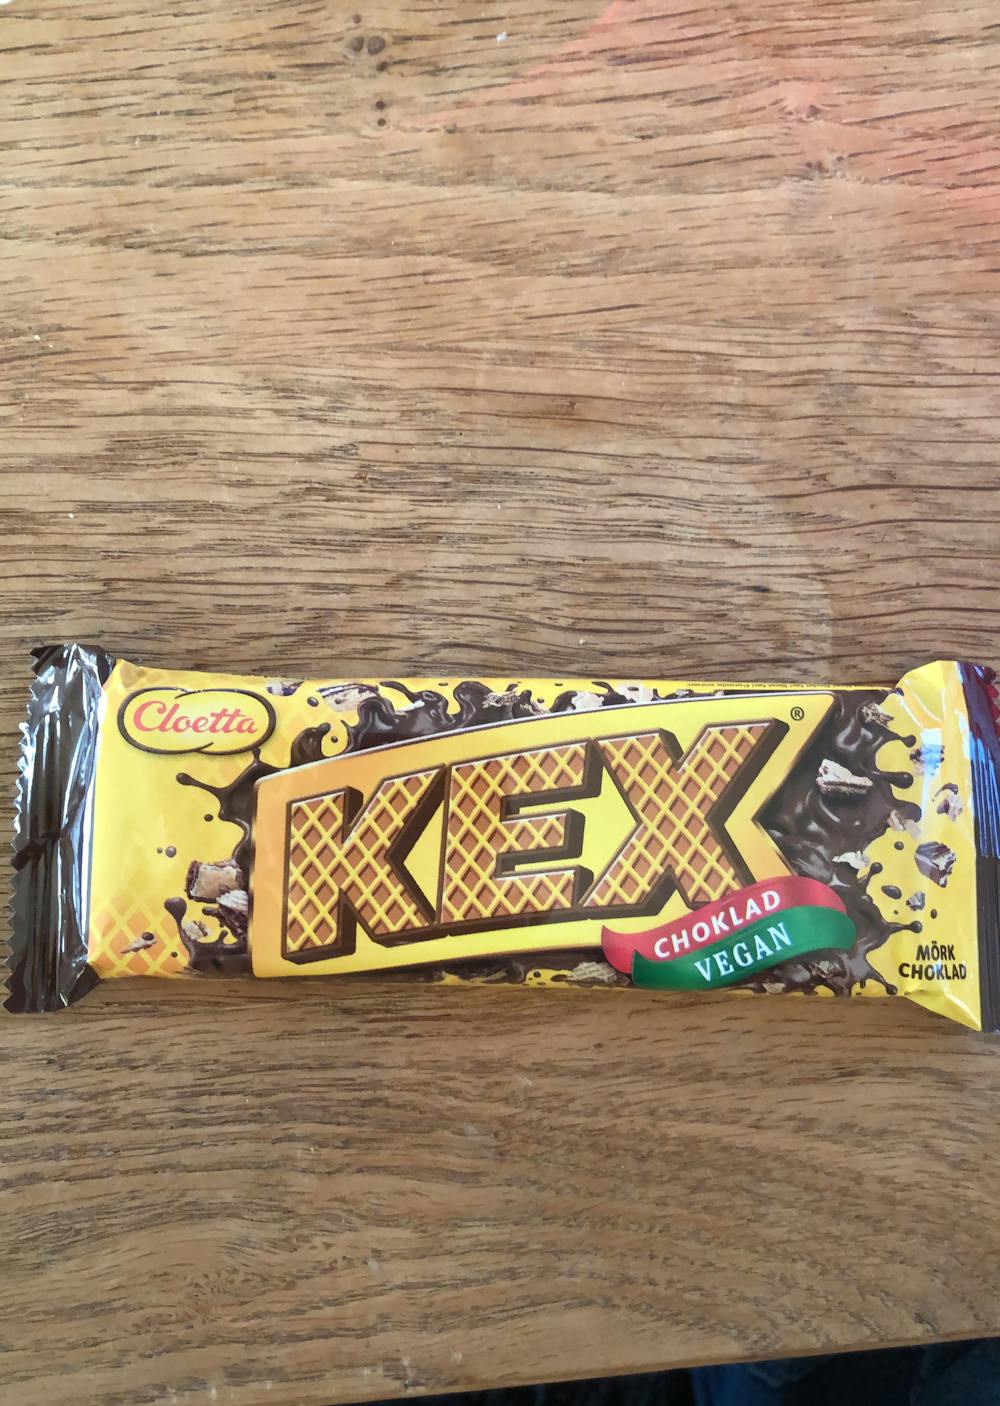 Kex choklad, vegan, Cloetta